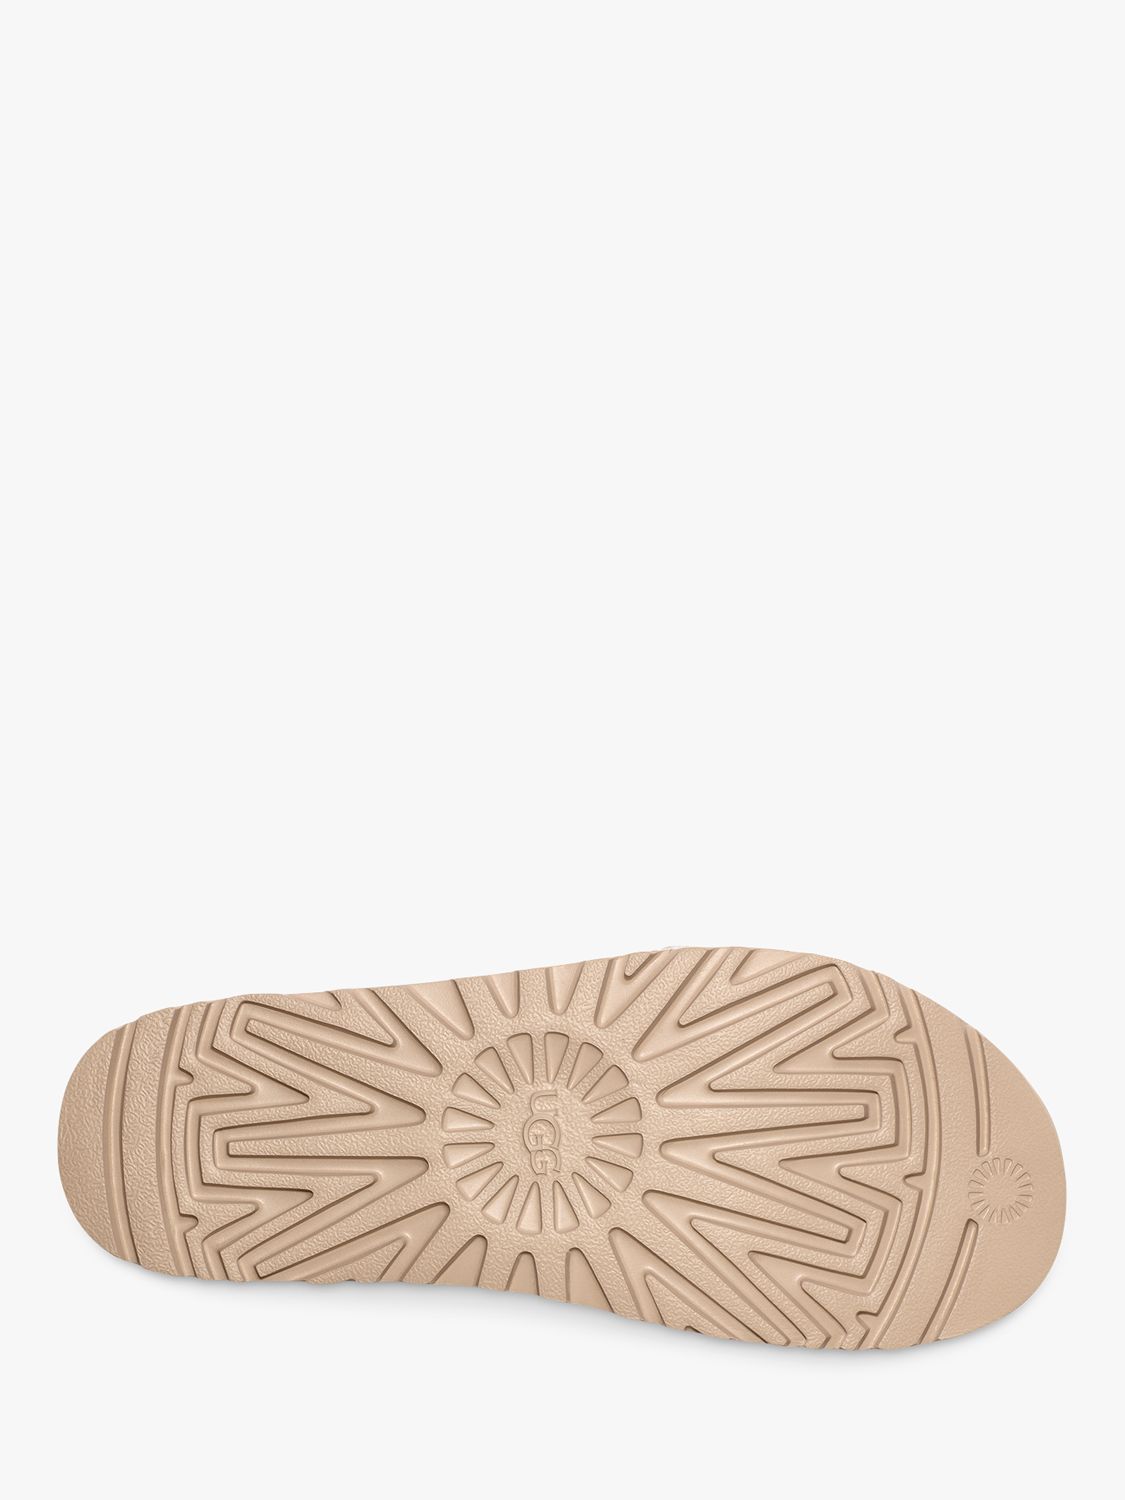 Buy UGG Goldenstar Leather Flatform Sandals, Jasmine Online at johnlewis.com